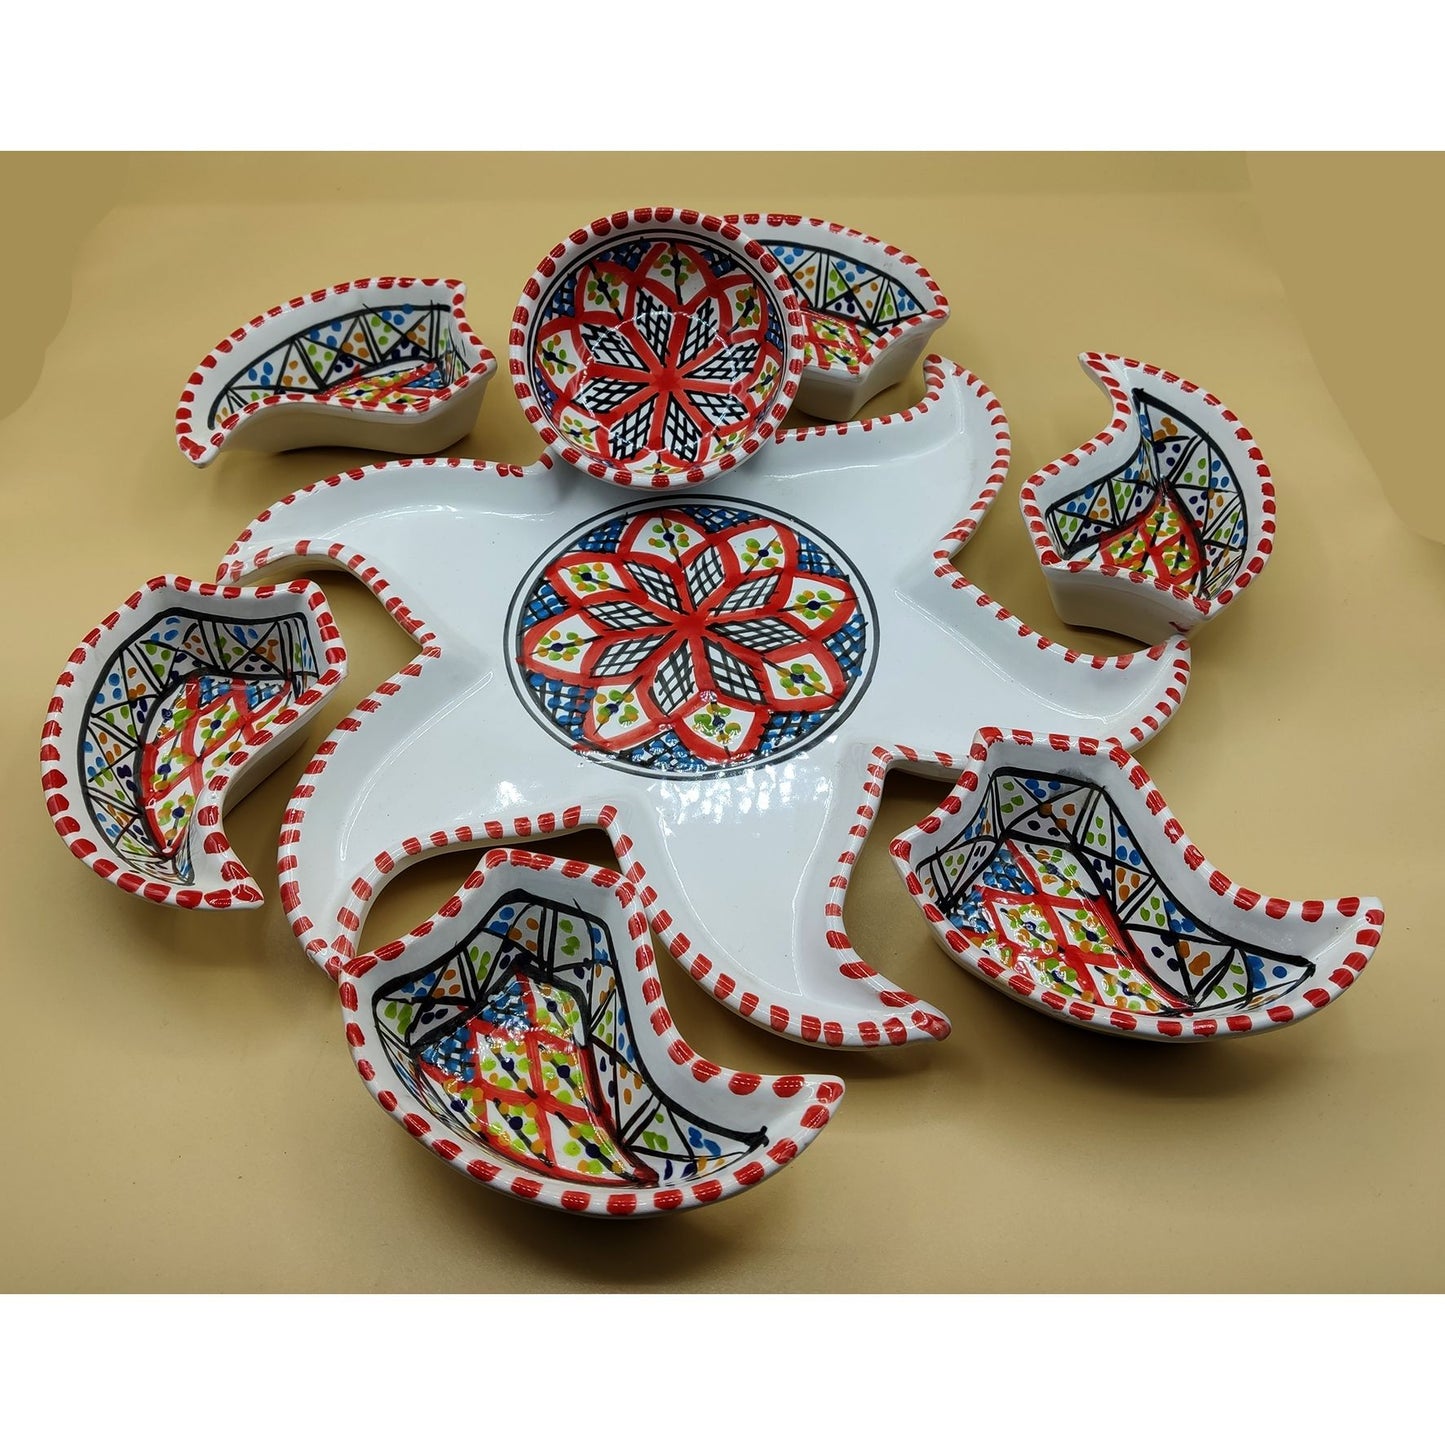 Antipastiera Piatto Etnico Ceramica Terracotta Tunisina Marocchina 2611201200